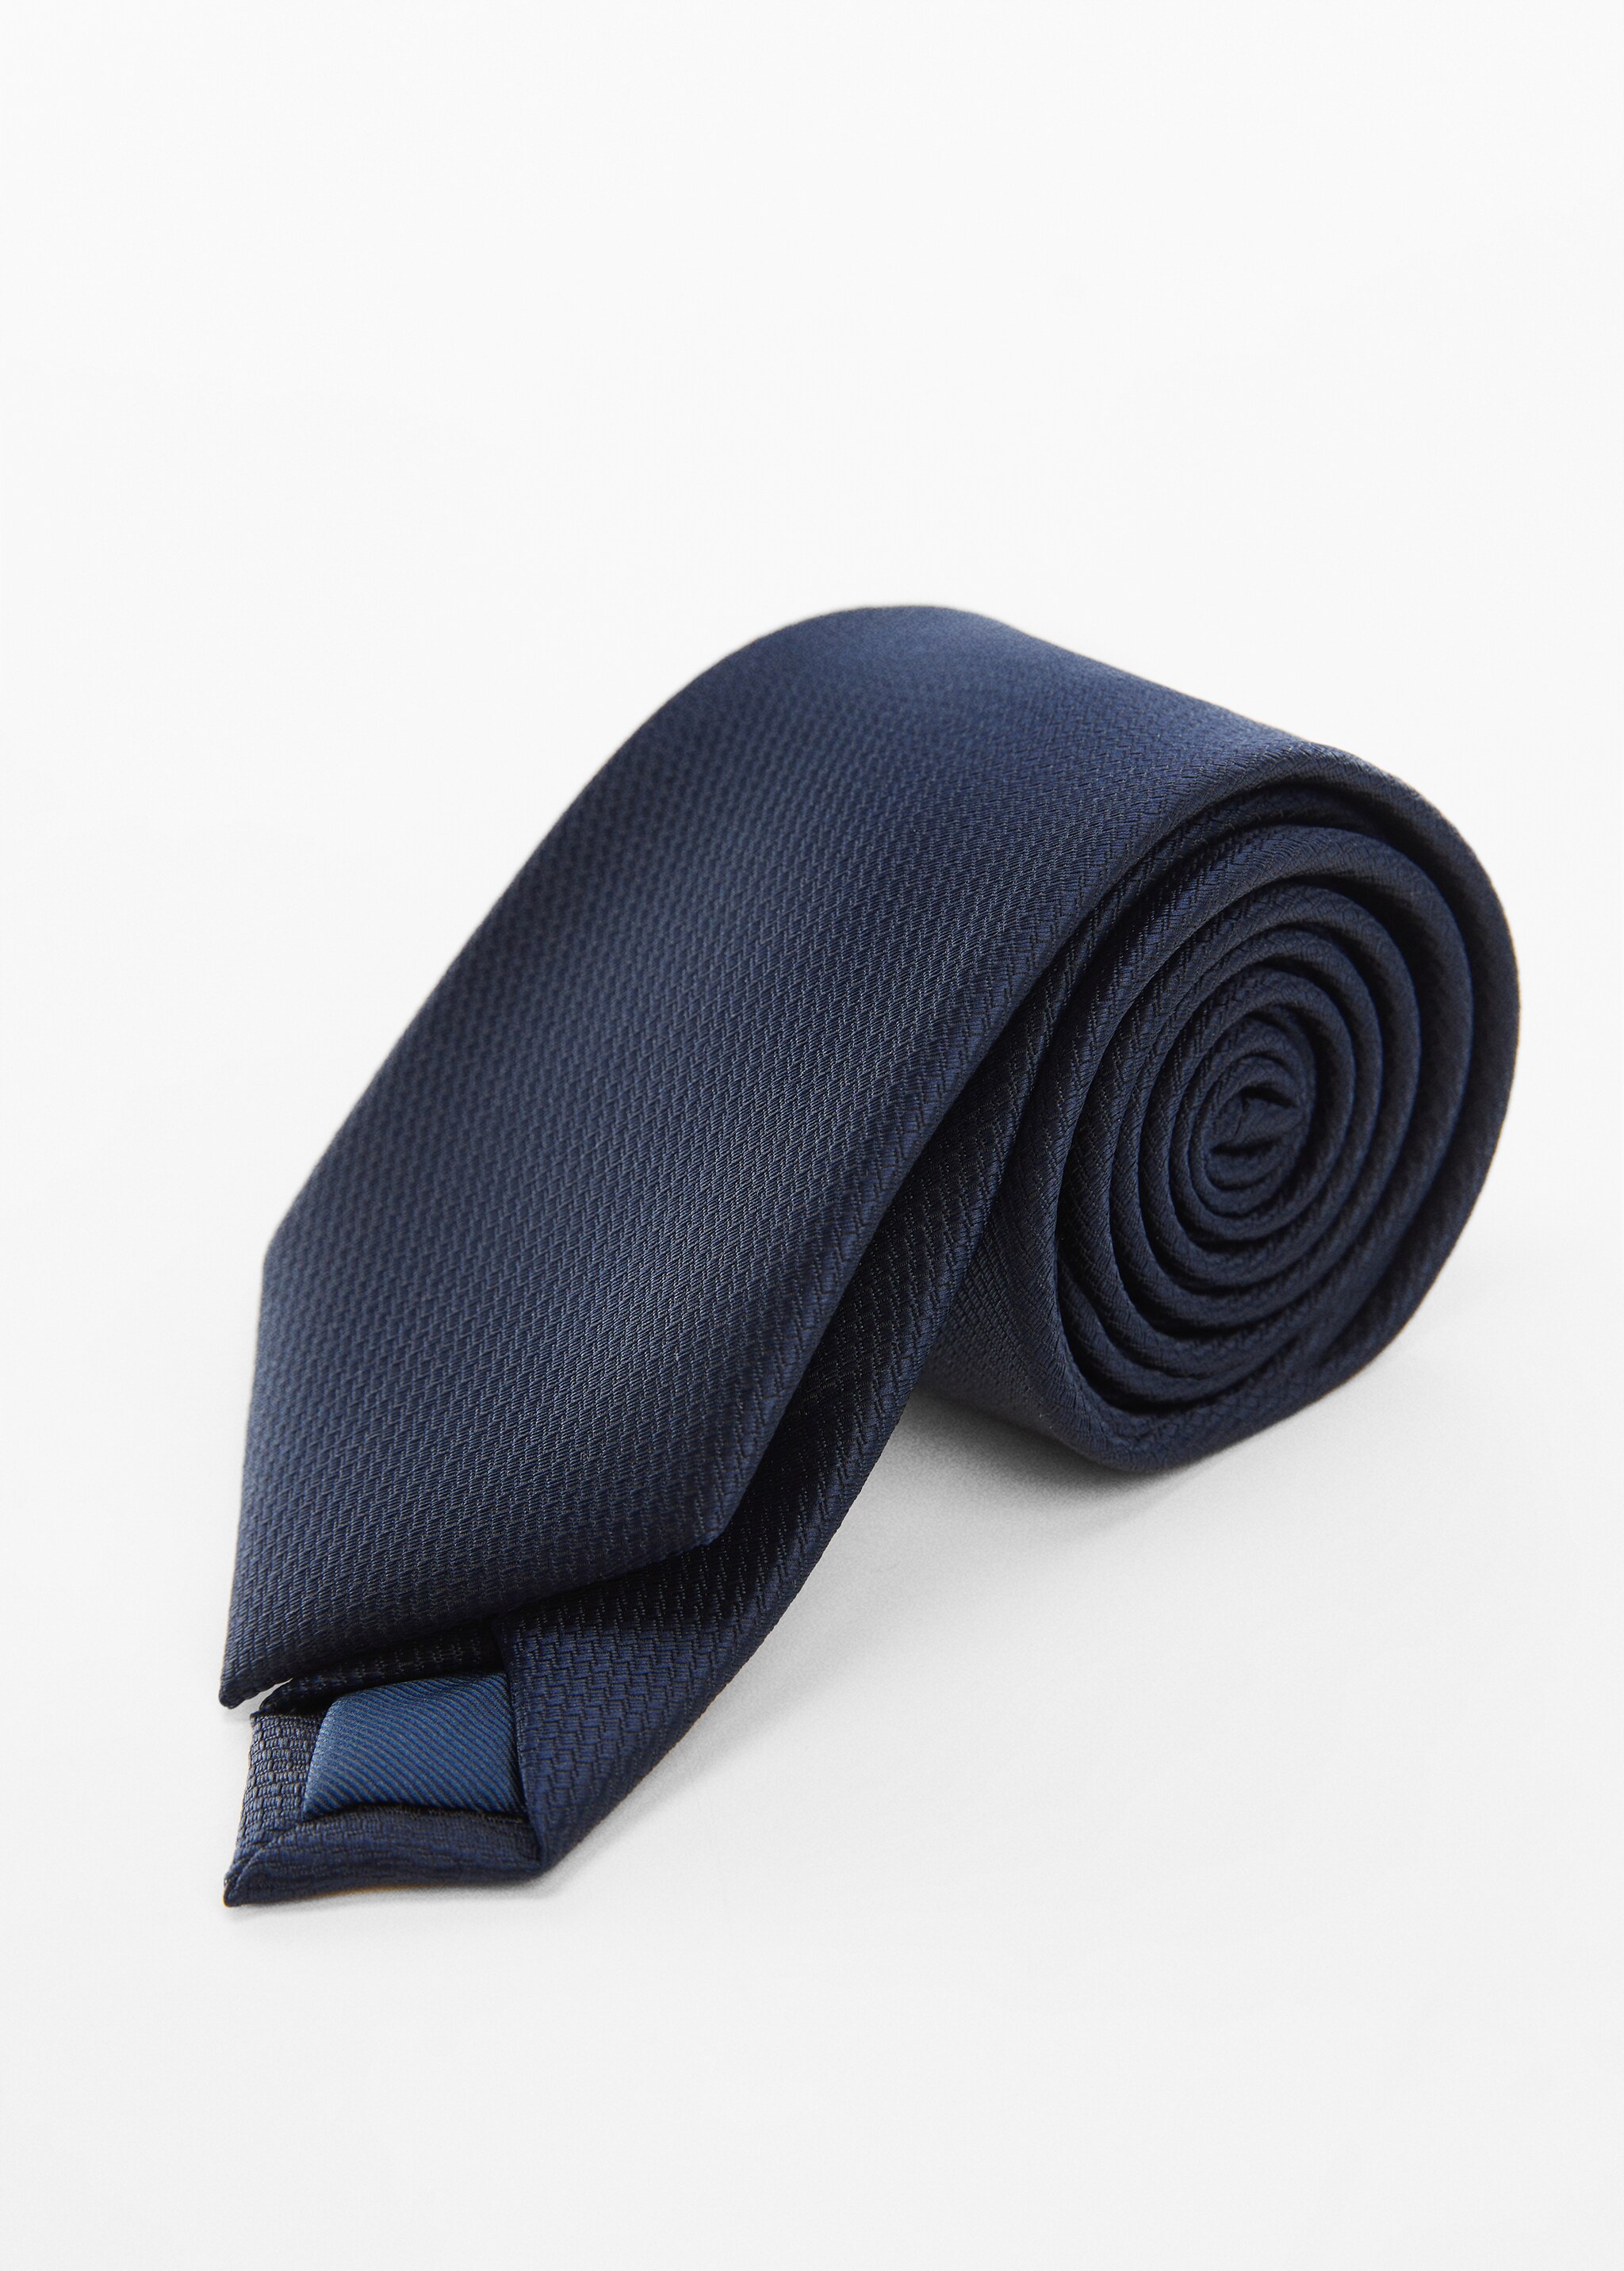 Немнущийся фактурный галстук - Средний план